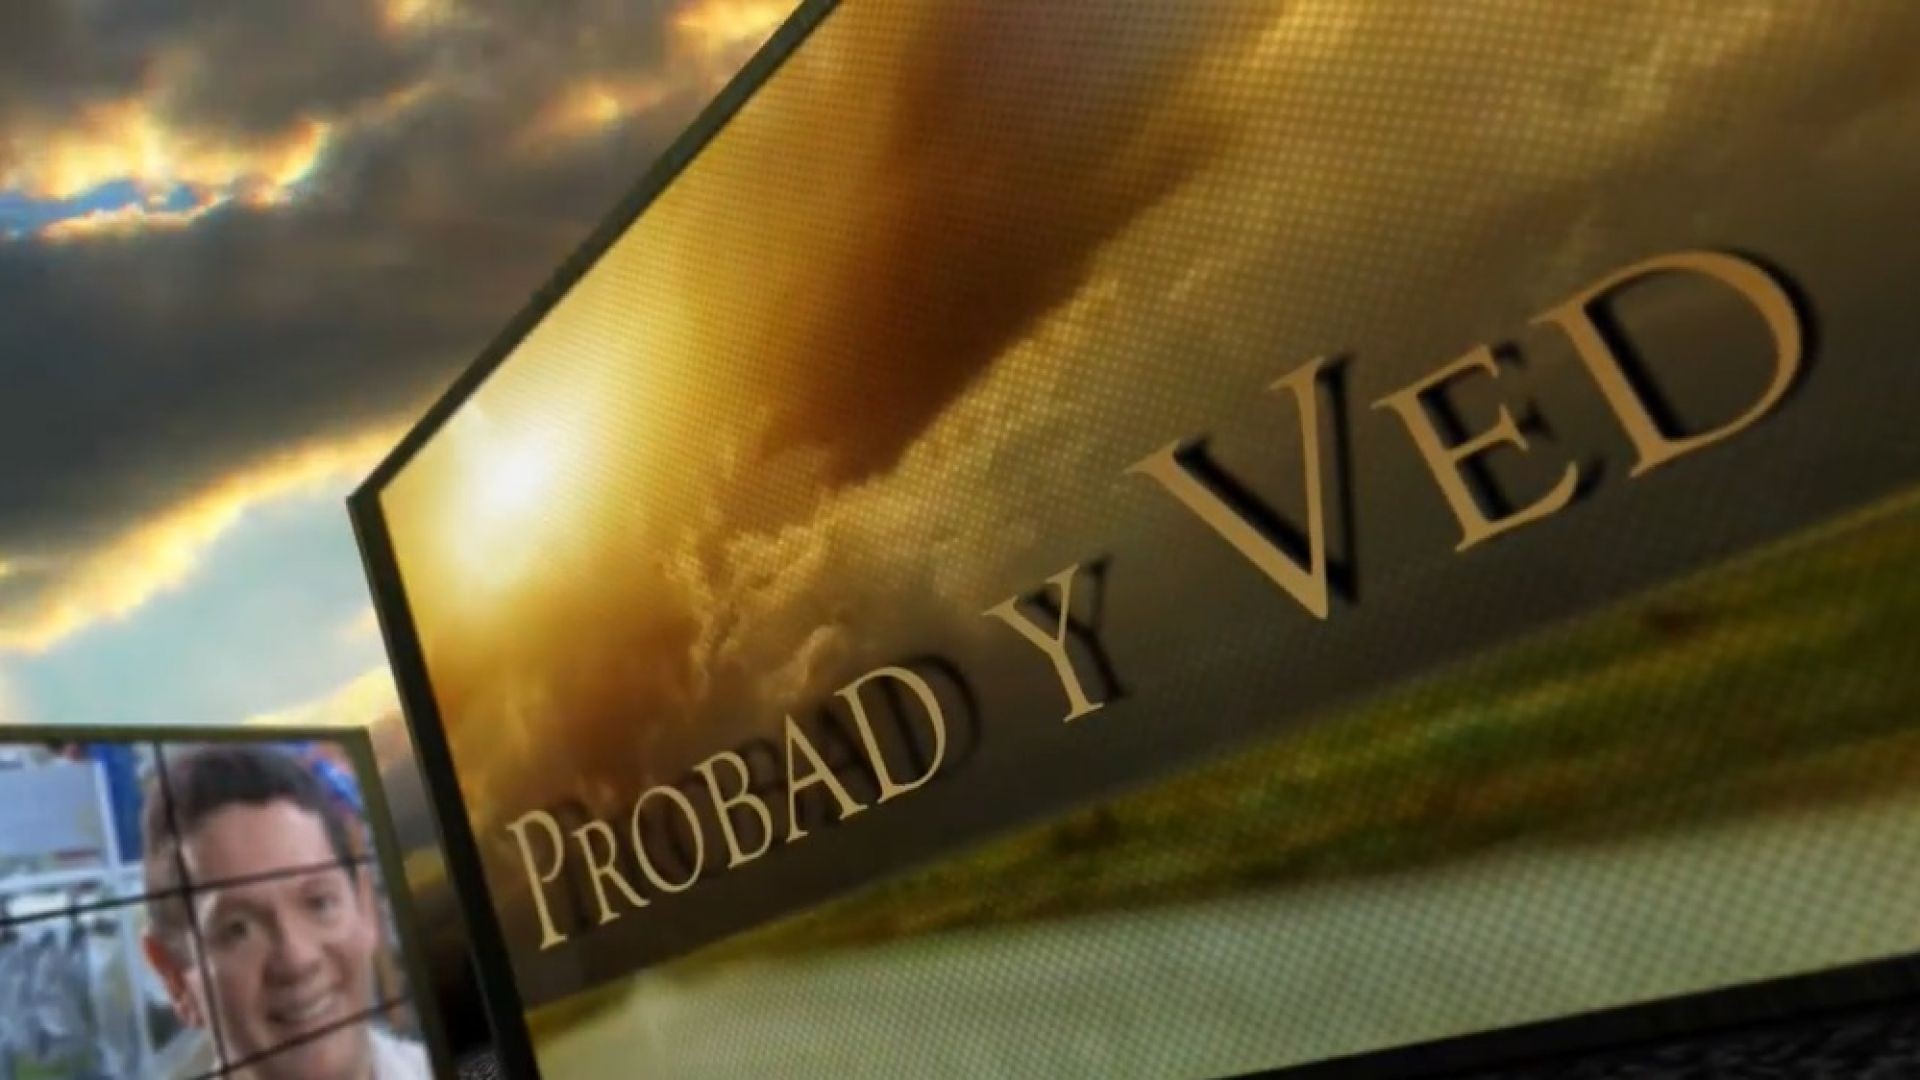 Probad y Ved 2013 - Un kit de bendiciones - 21/Sep